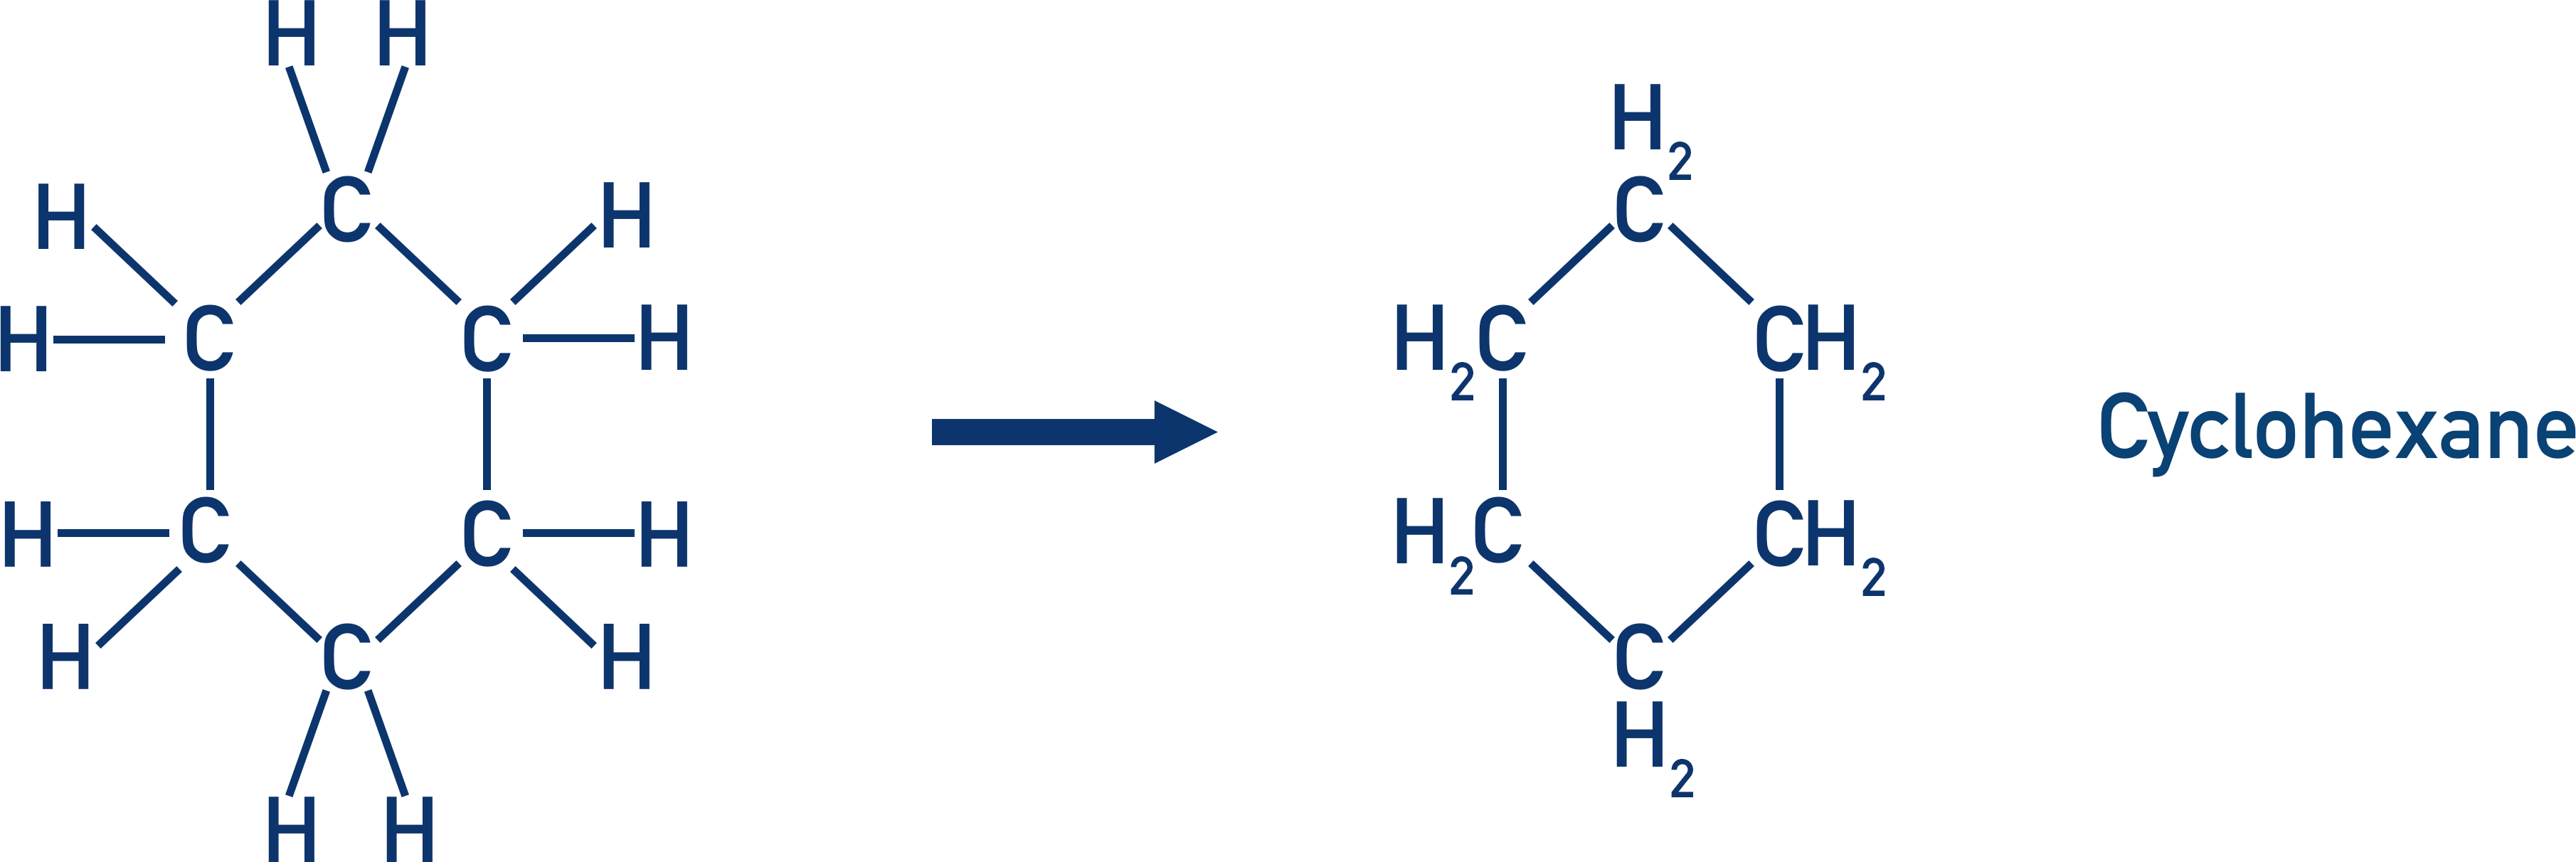 cyclohexane structure